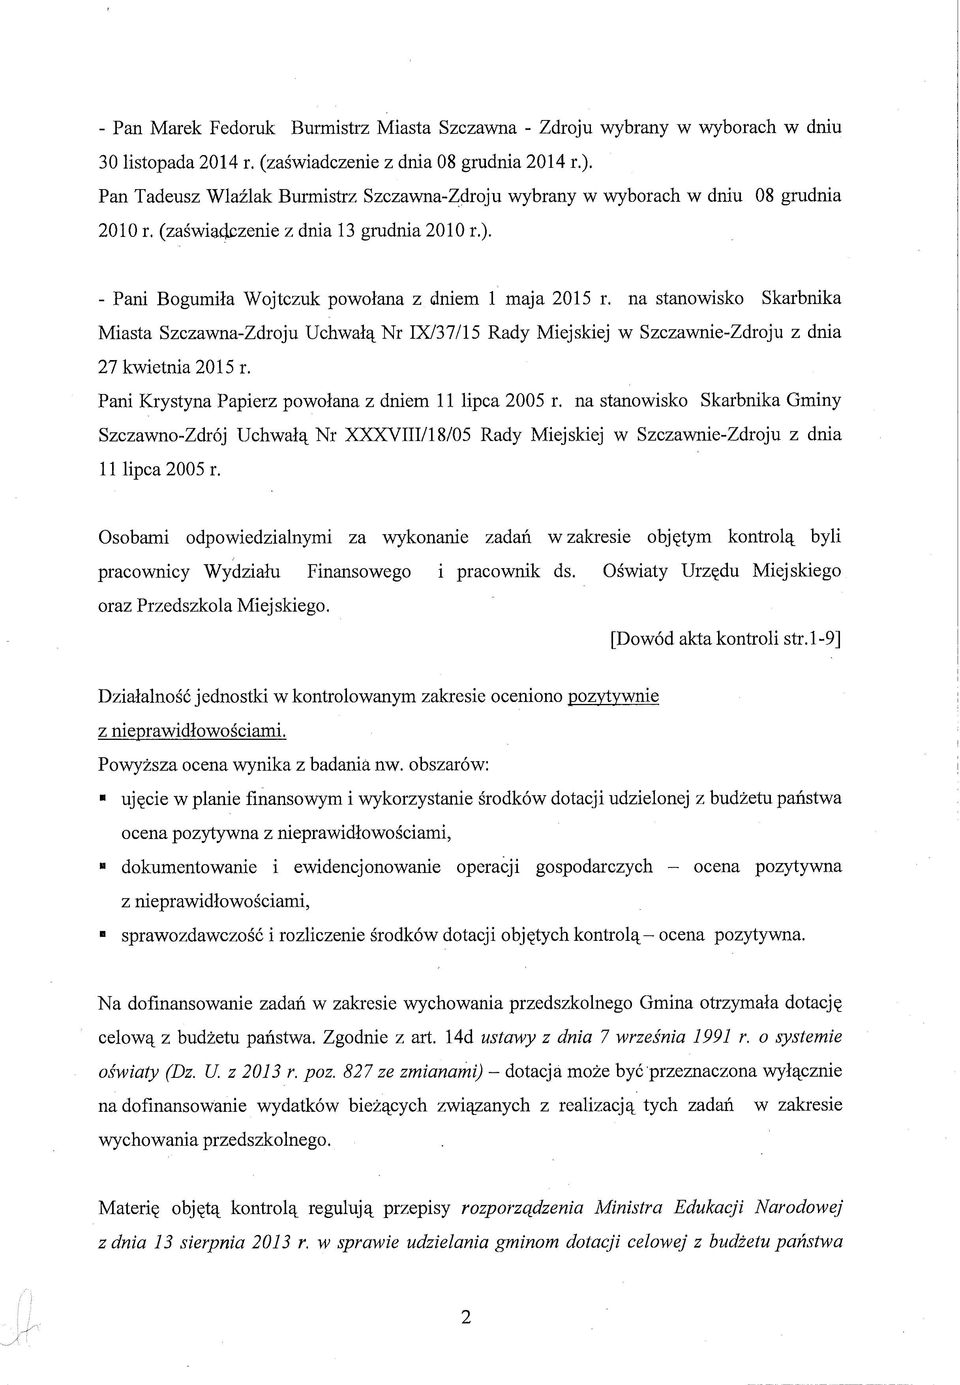 na stanowisko Skarbnika Miasta Szczawna-Zdroju Uchwałą Nr IX/37/15 Rady Miejskiej w Szczawnie-Zdroju z dnia 27 kwietnia 2015 r. Pani Krystyna Papierz powołana z dniem 11 lipca 2005 r.